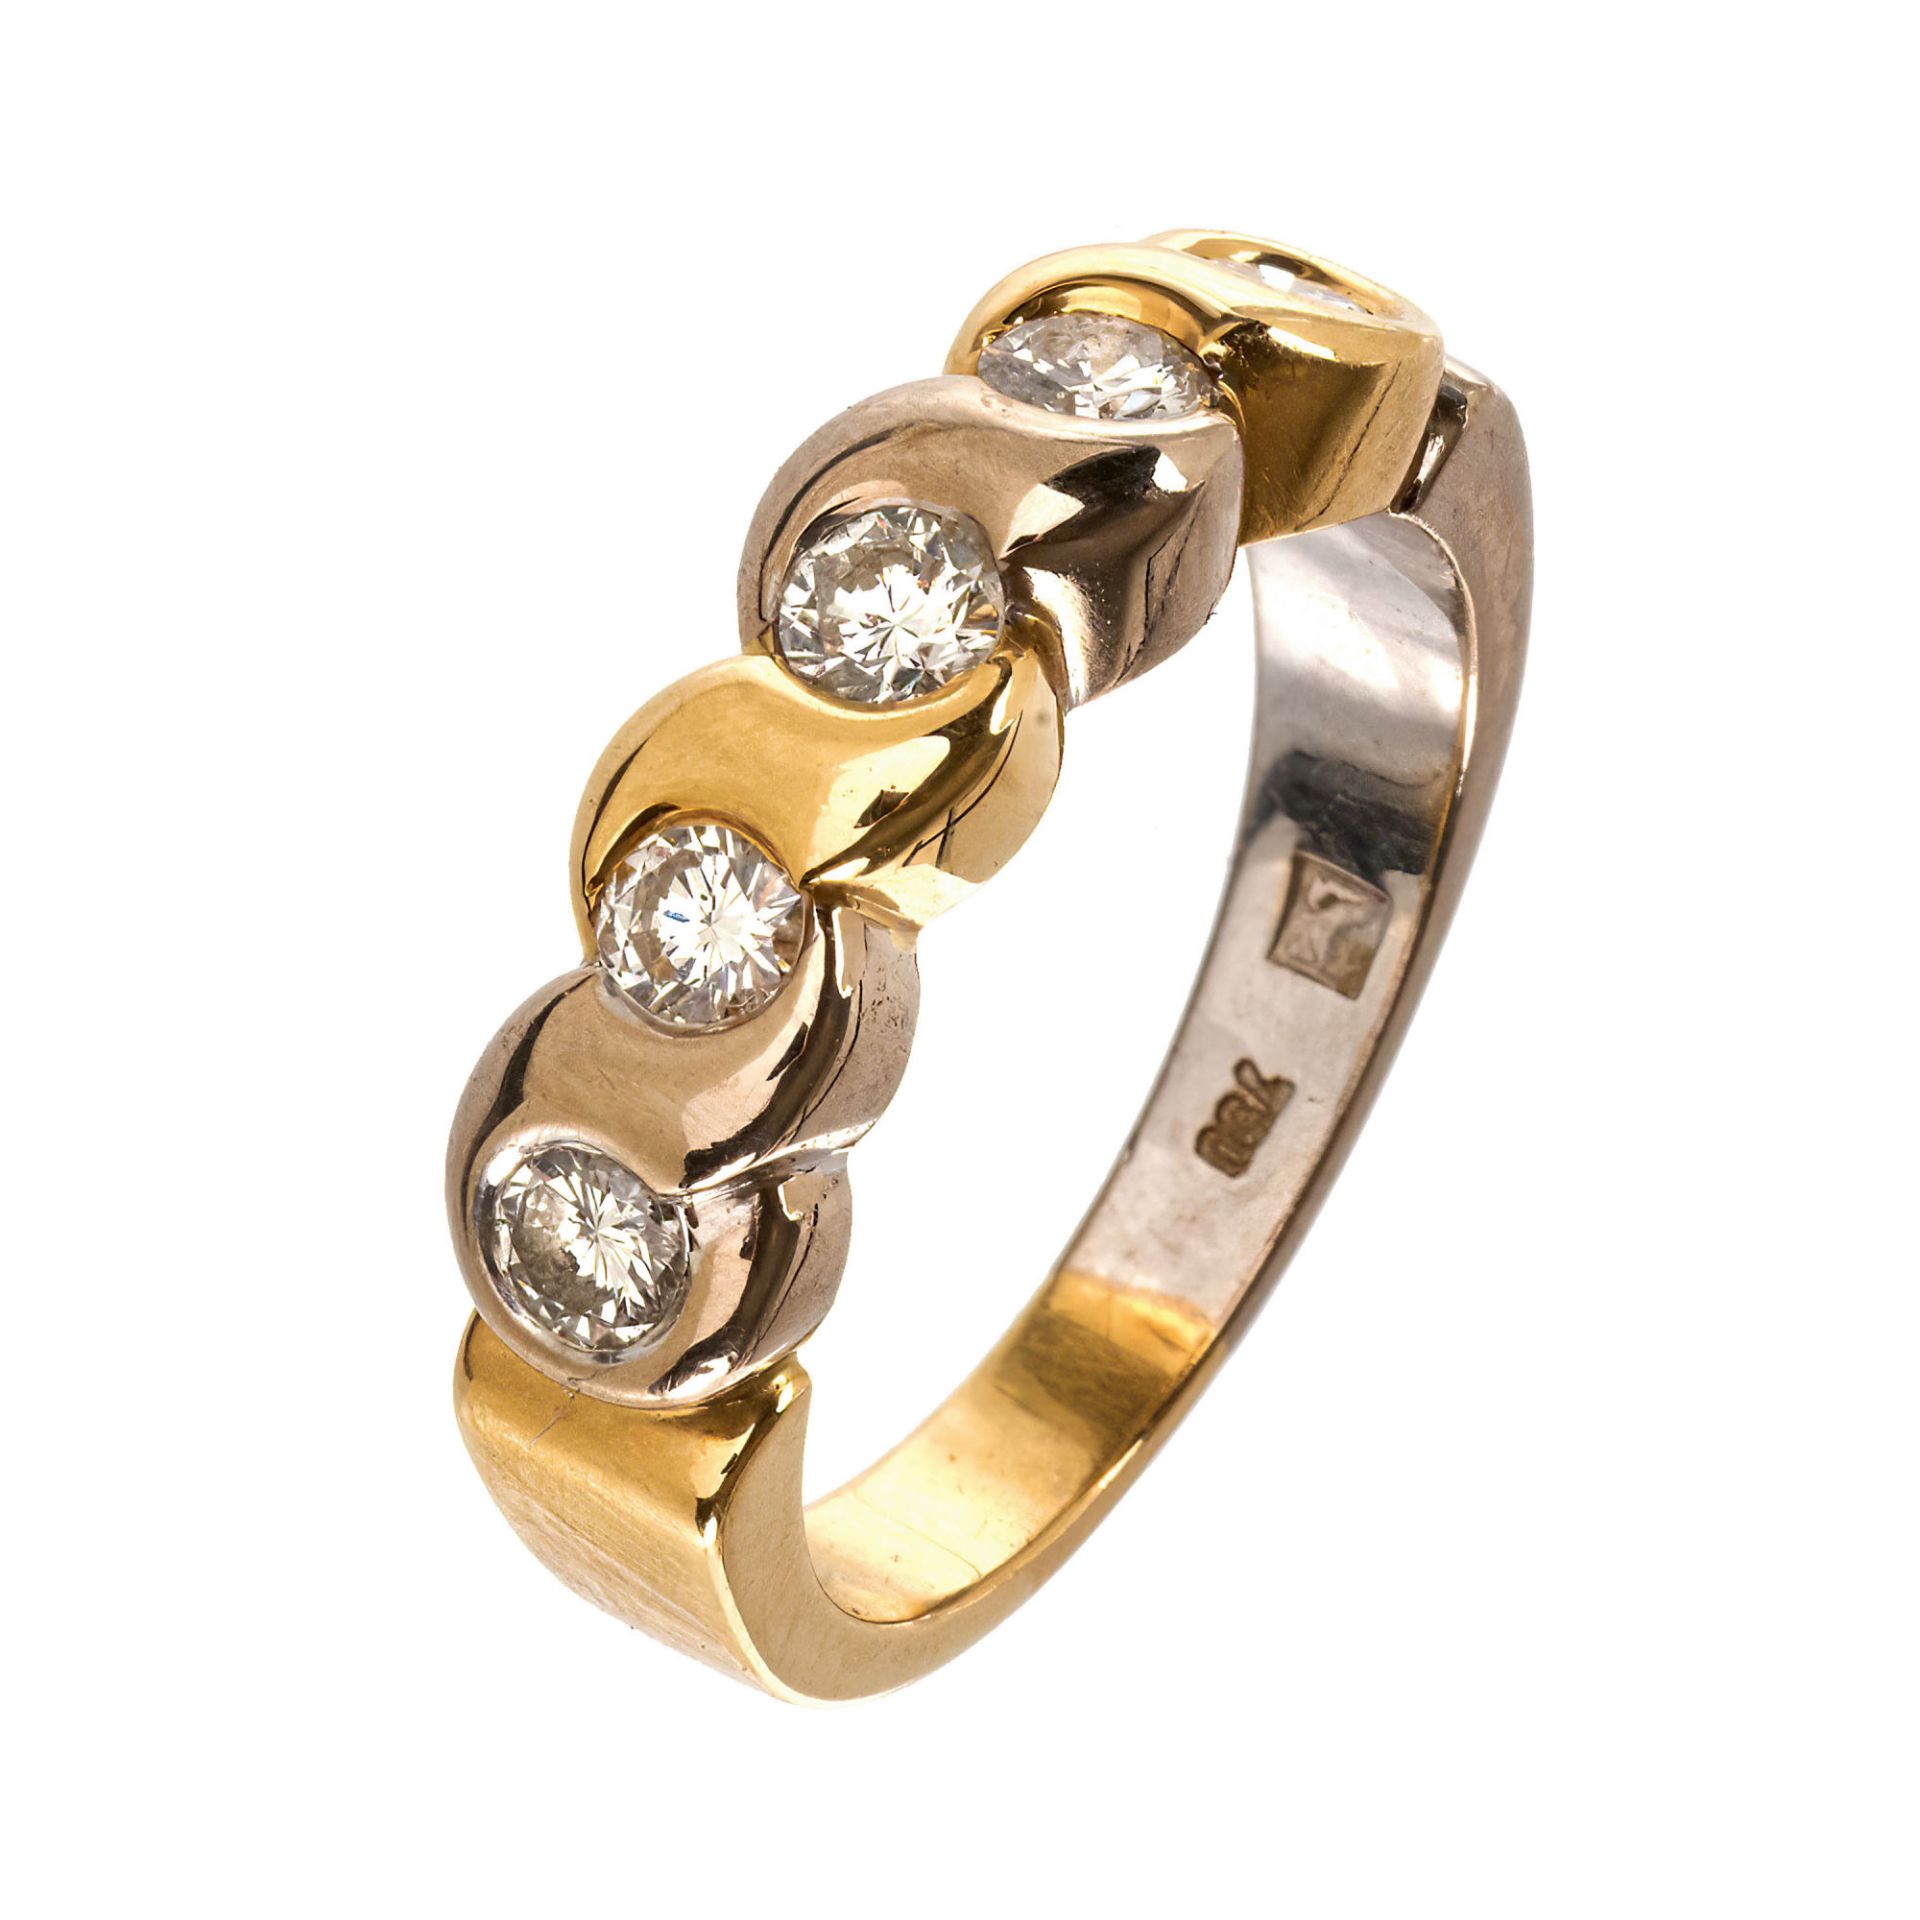 BRILLANT-RING / Diamond-ring 